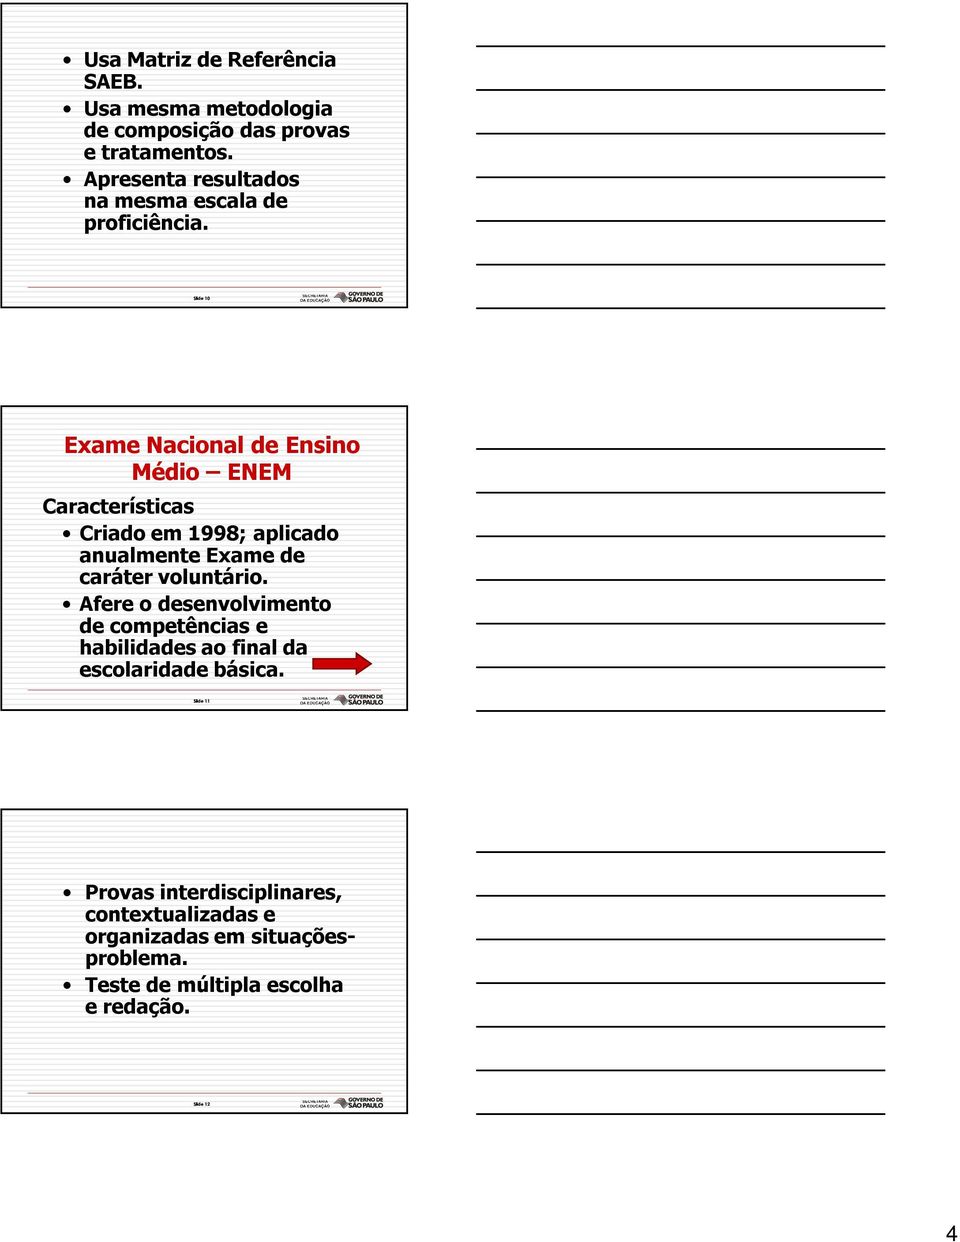 Slide 10 Exame Nacional de Ensino Médio ENEM Características Criado em 1998; aplicado anualmente Exame de caráter